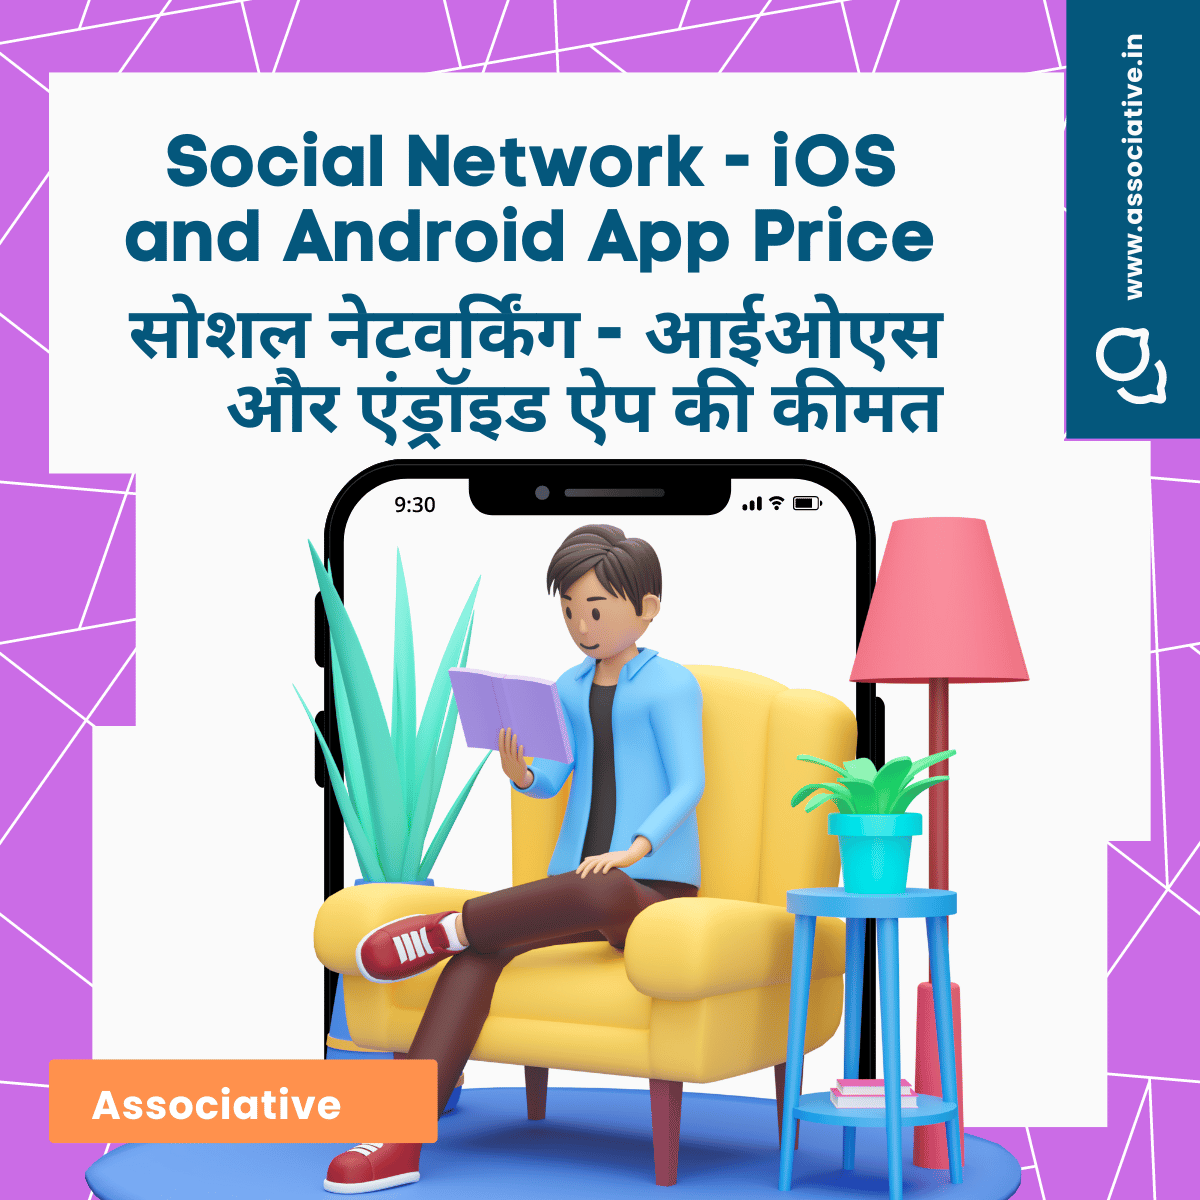 Social Network - iOS and Android App Price

सोशल नेटवर्किंग - आईओएस और एंड्रॉइड ऐप की कीमत